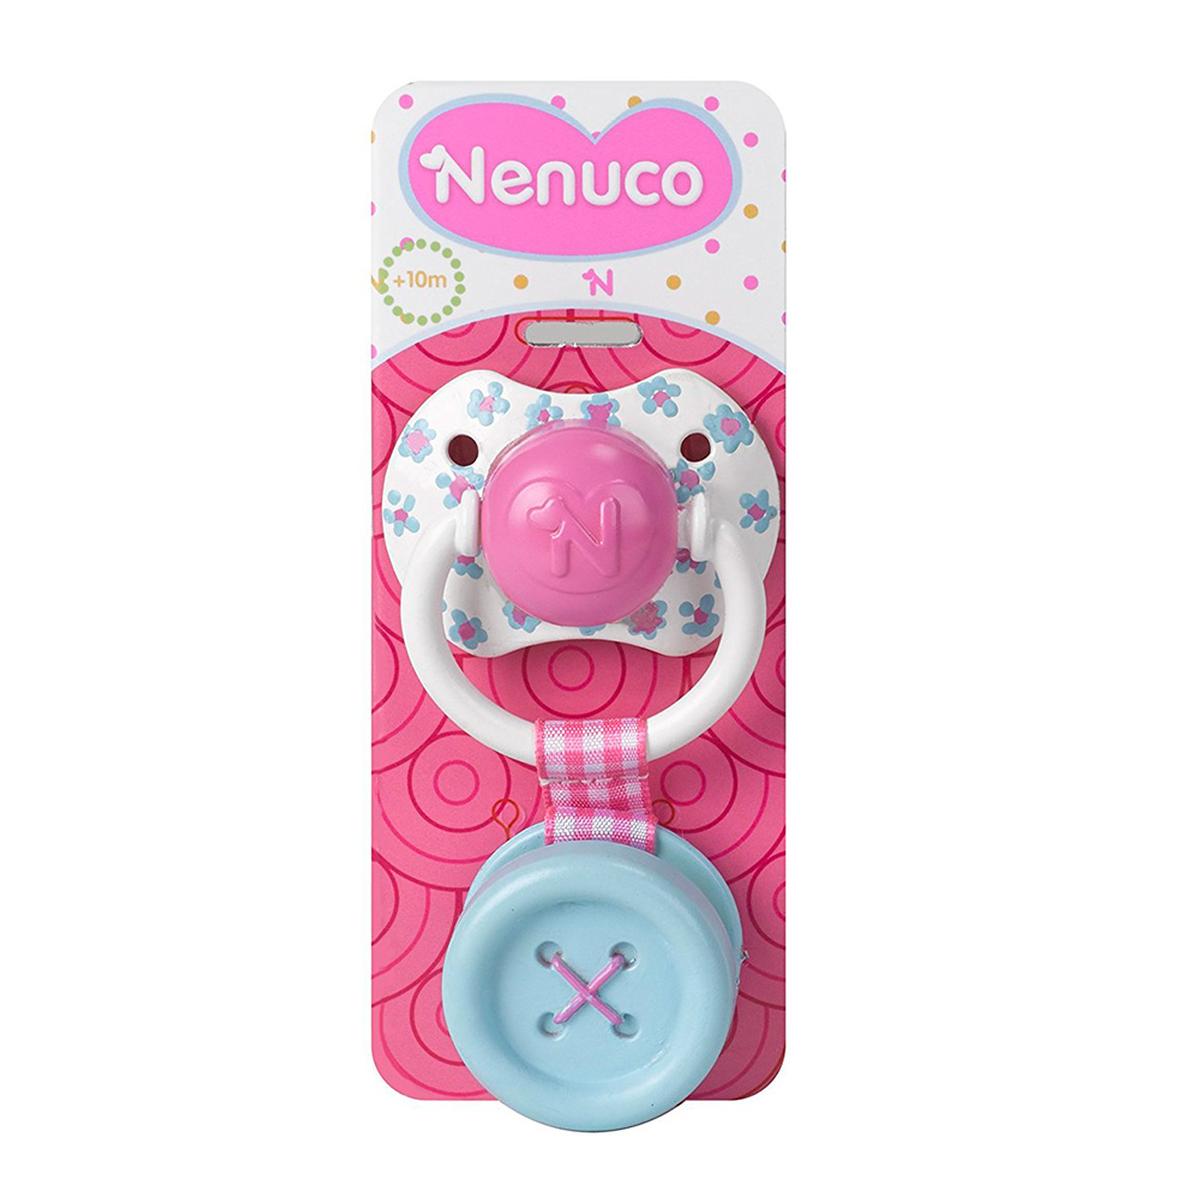 Nenuco - Chupeta Boneco (vários modelos) | Nenuco acessórios | Loja de  brinquedos e videojogos Online Toysrus